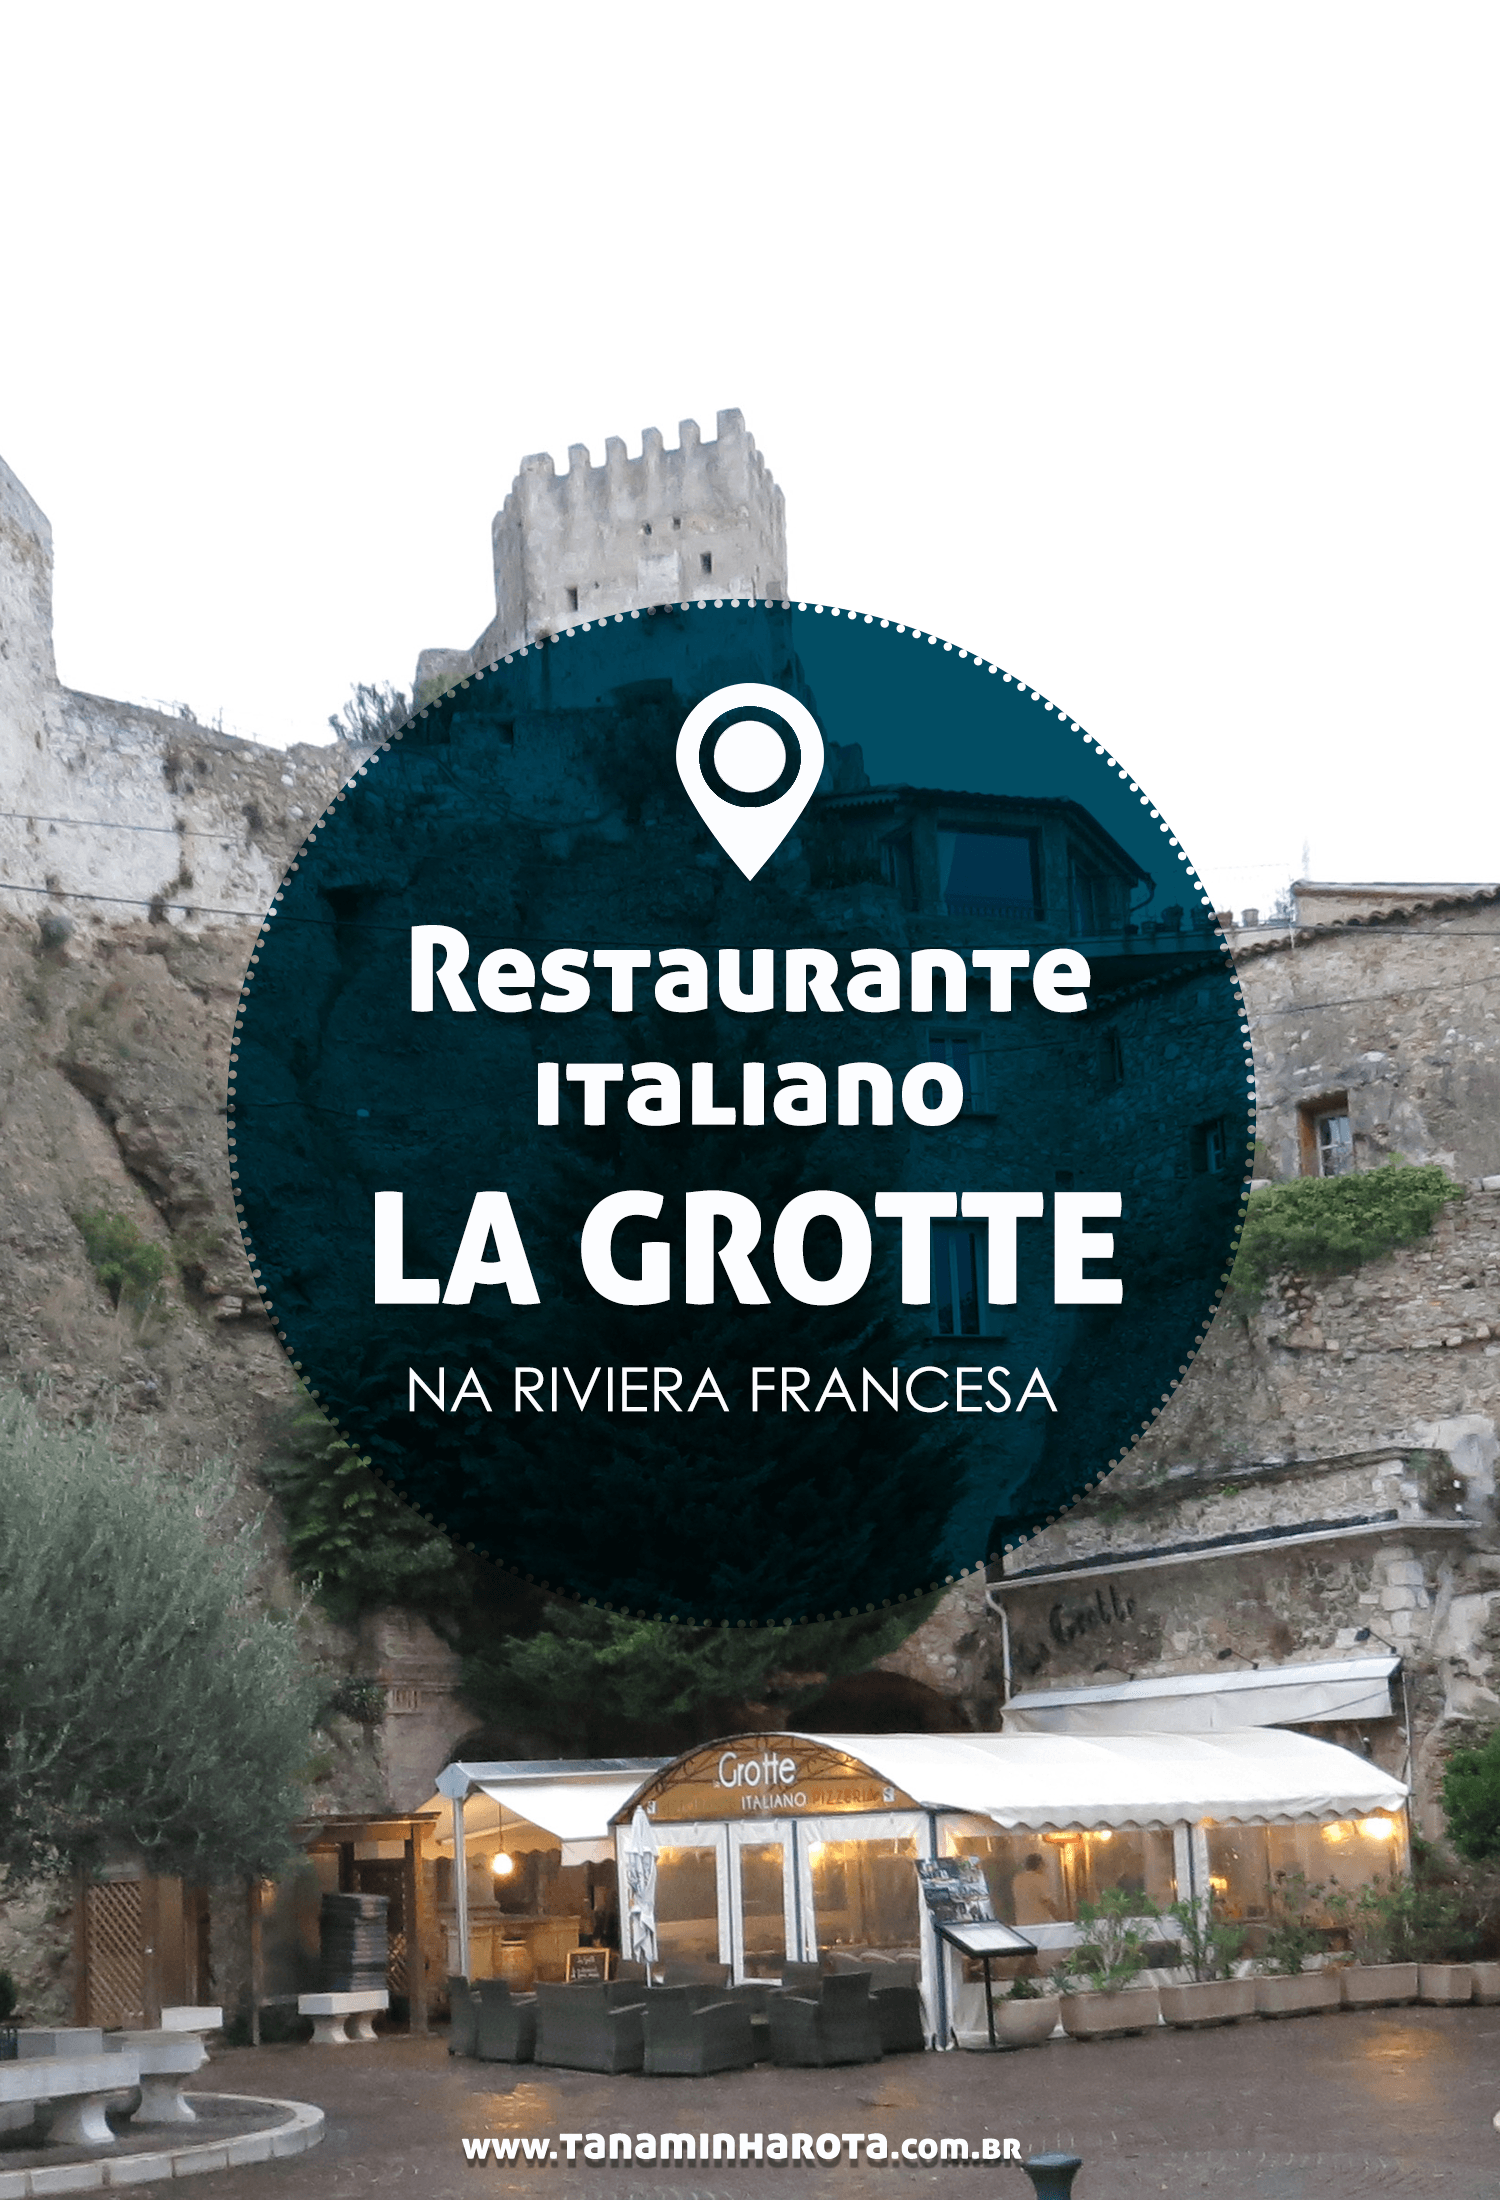 Montando o seu roteiro pela Riviera Francesa? Então você precisa incluir o restaurante La Grotte! #gastronomia #franca #europa